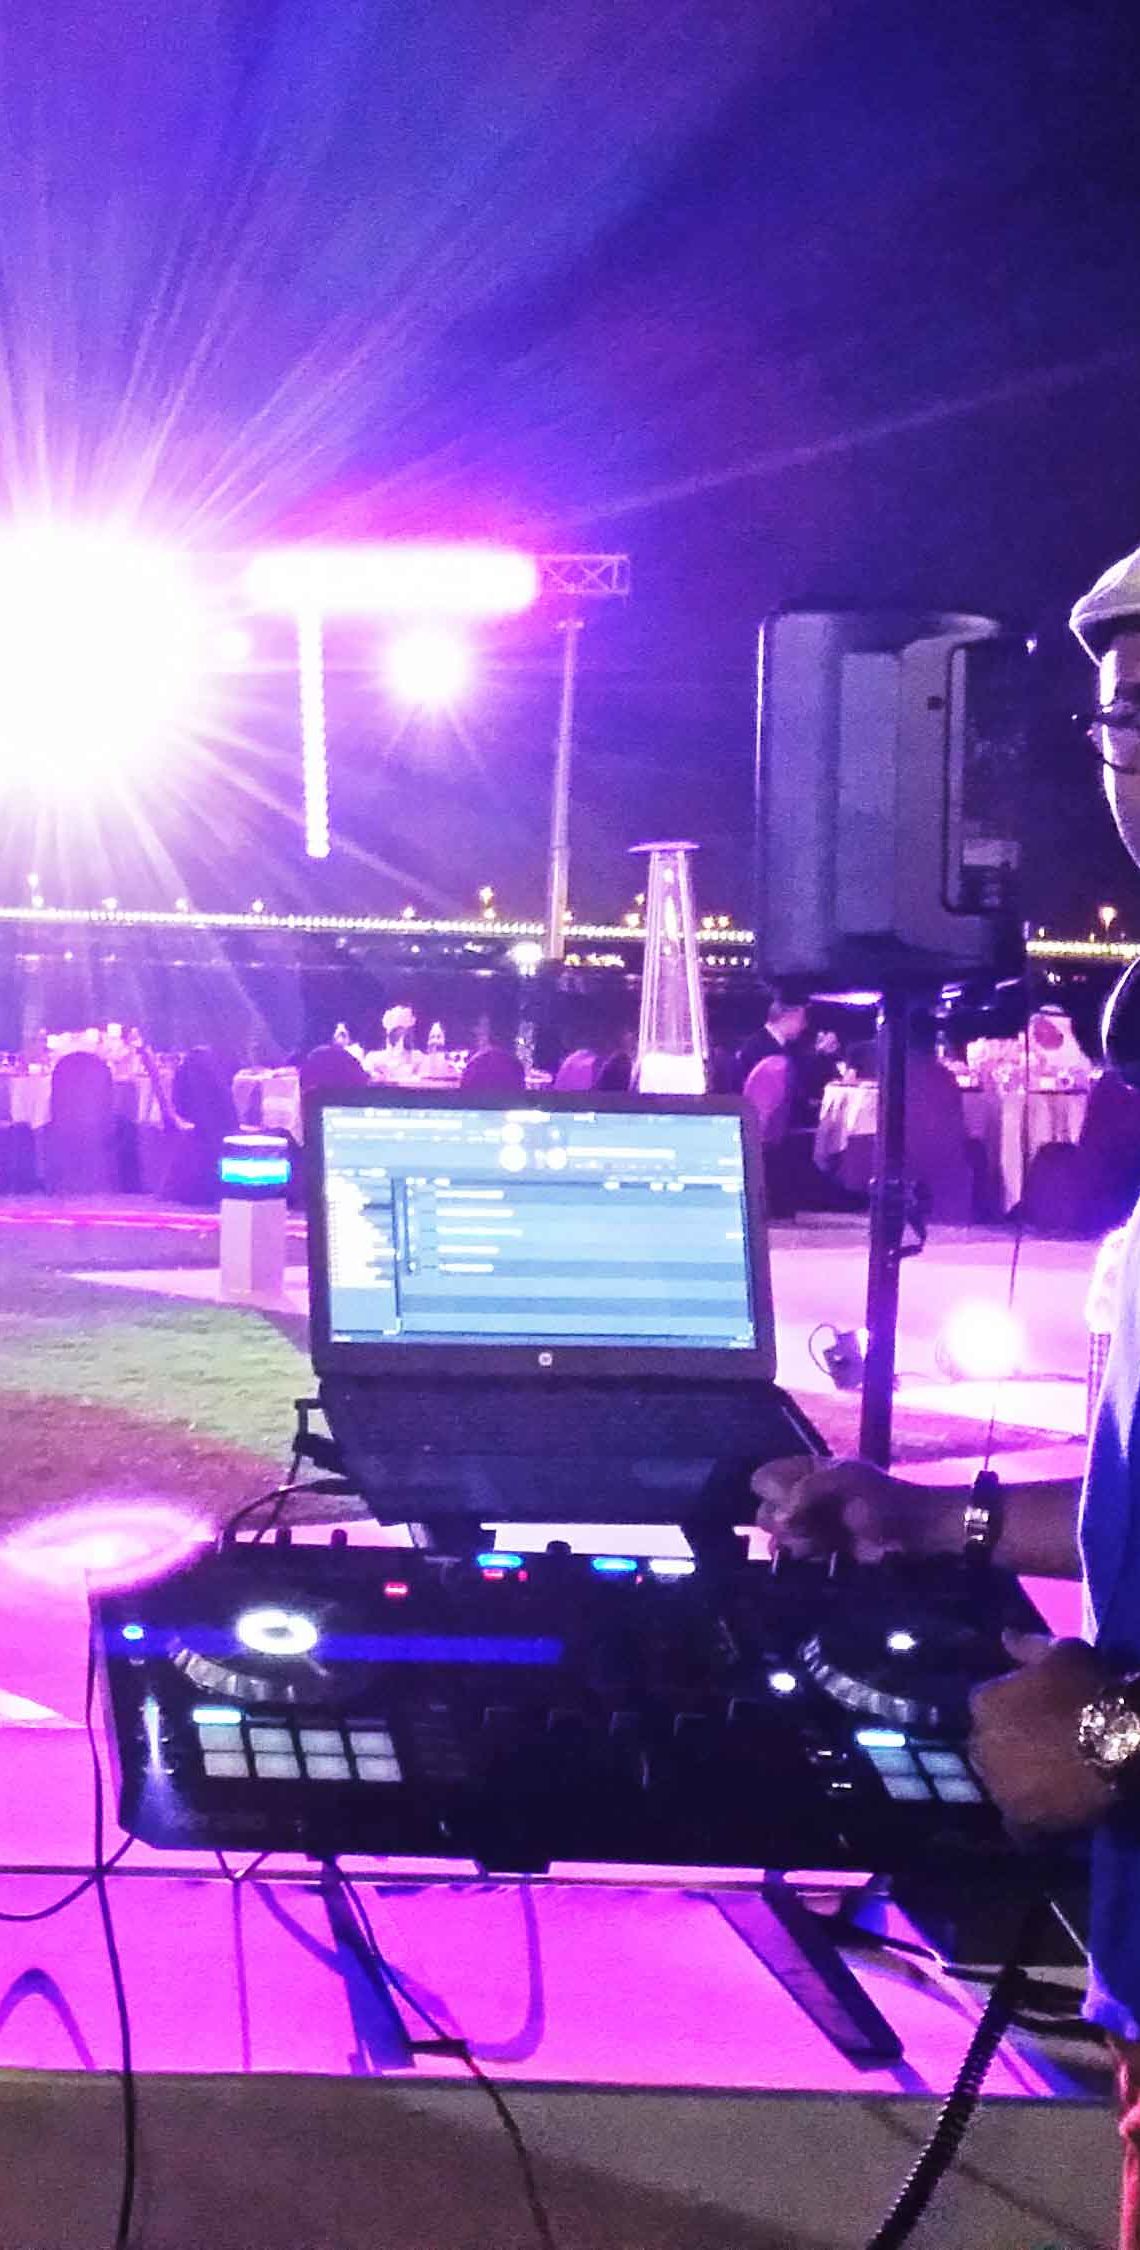 DJ for corporate event in dubai